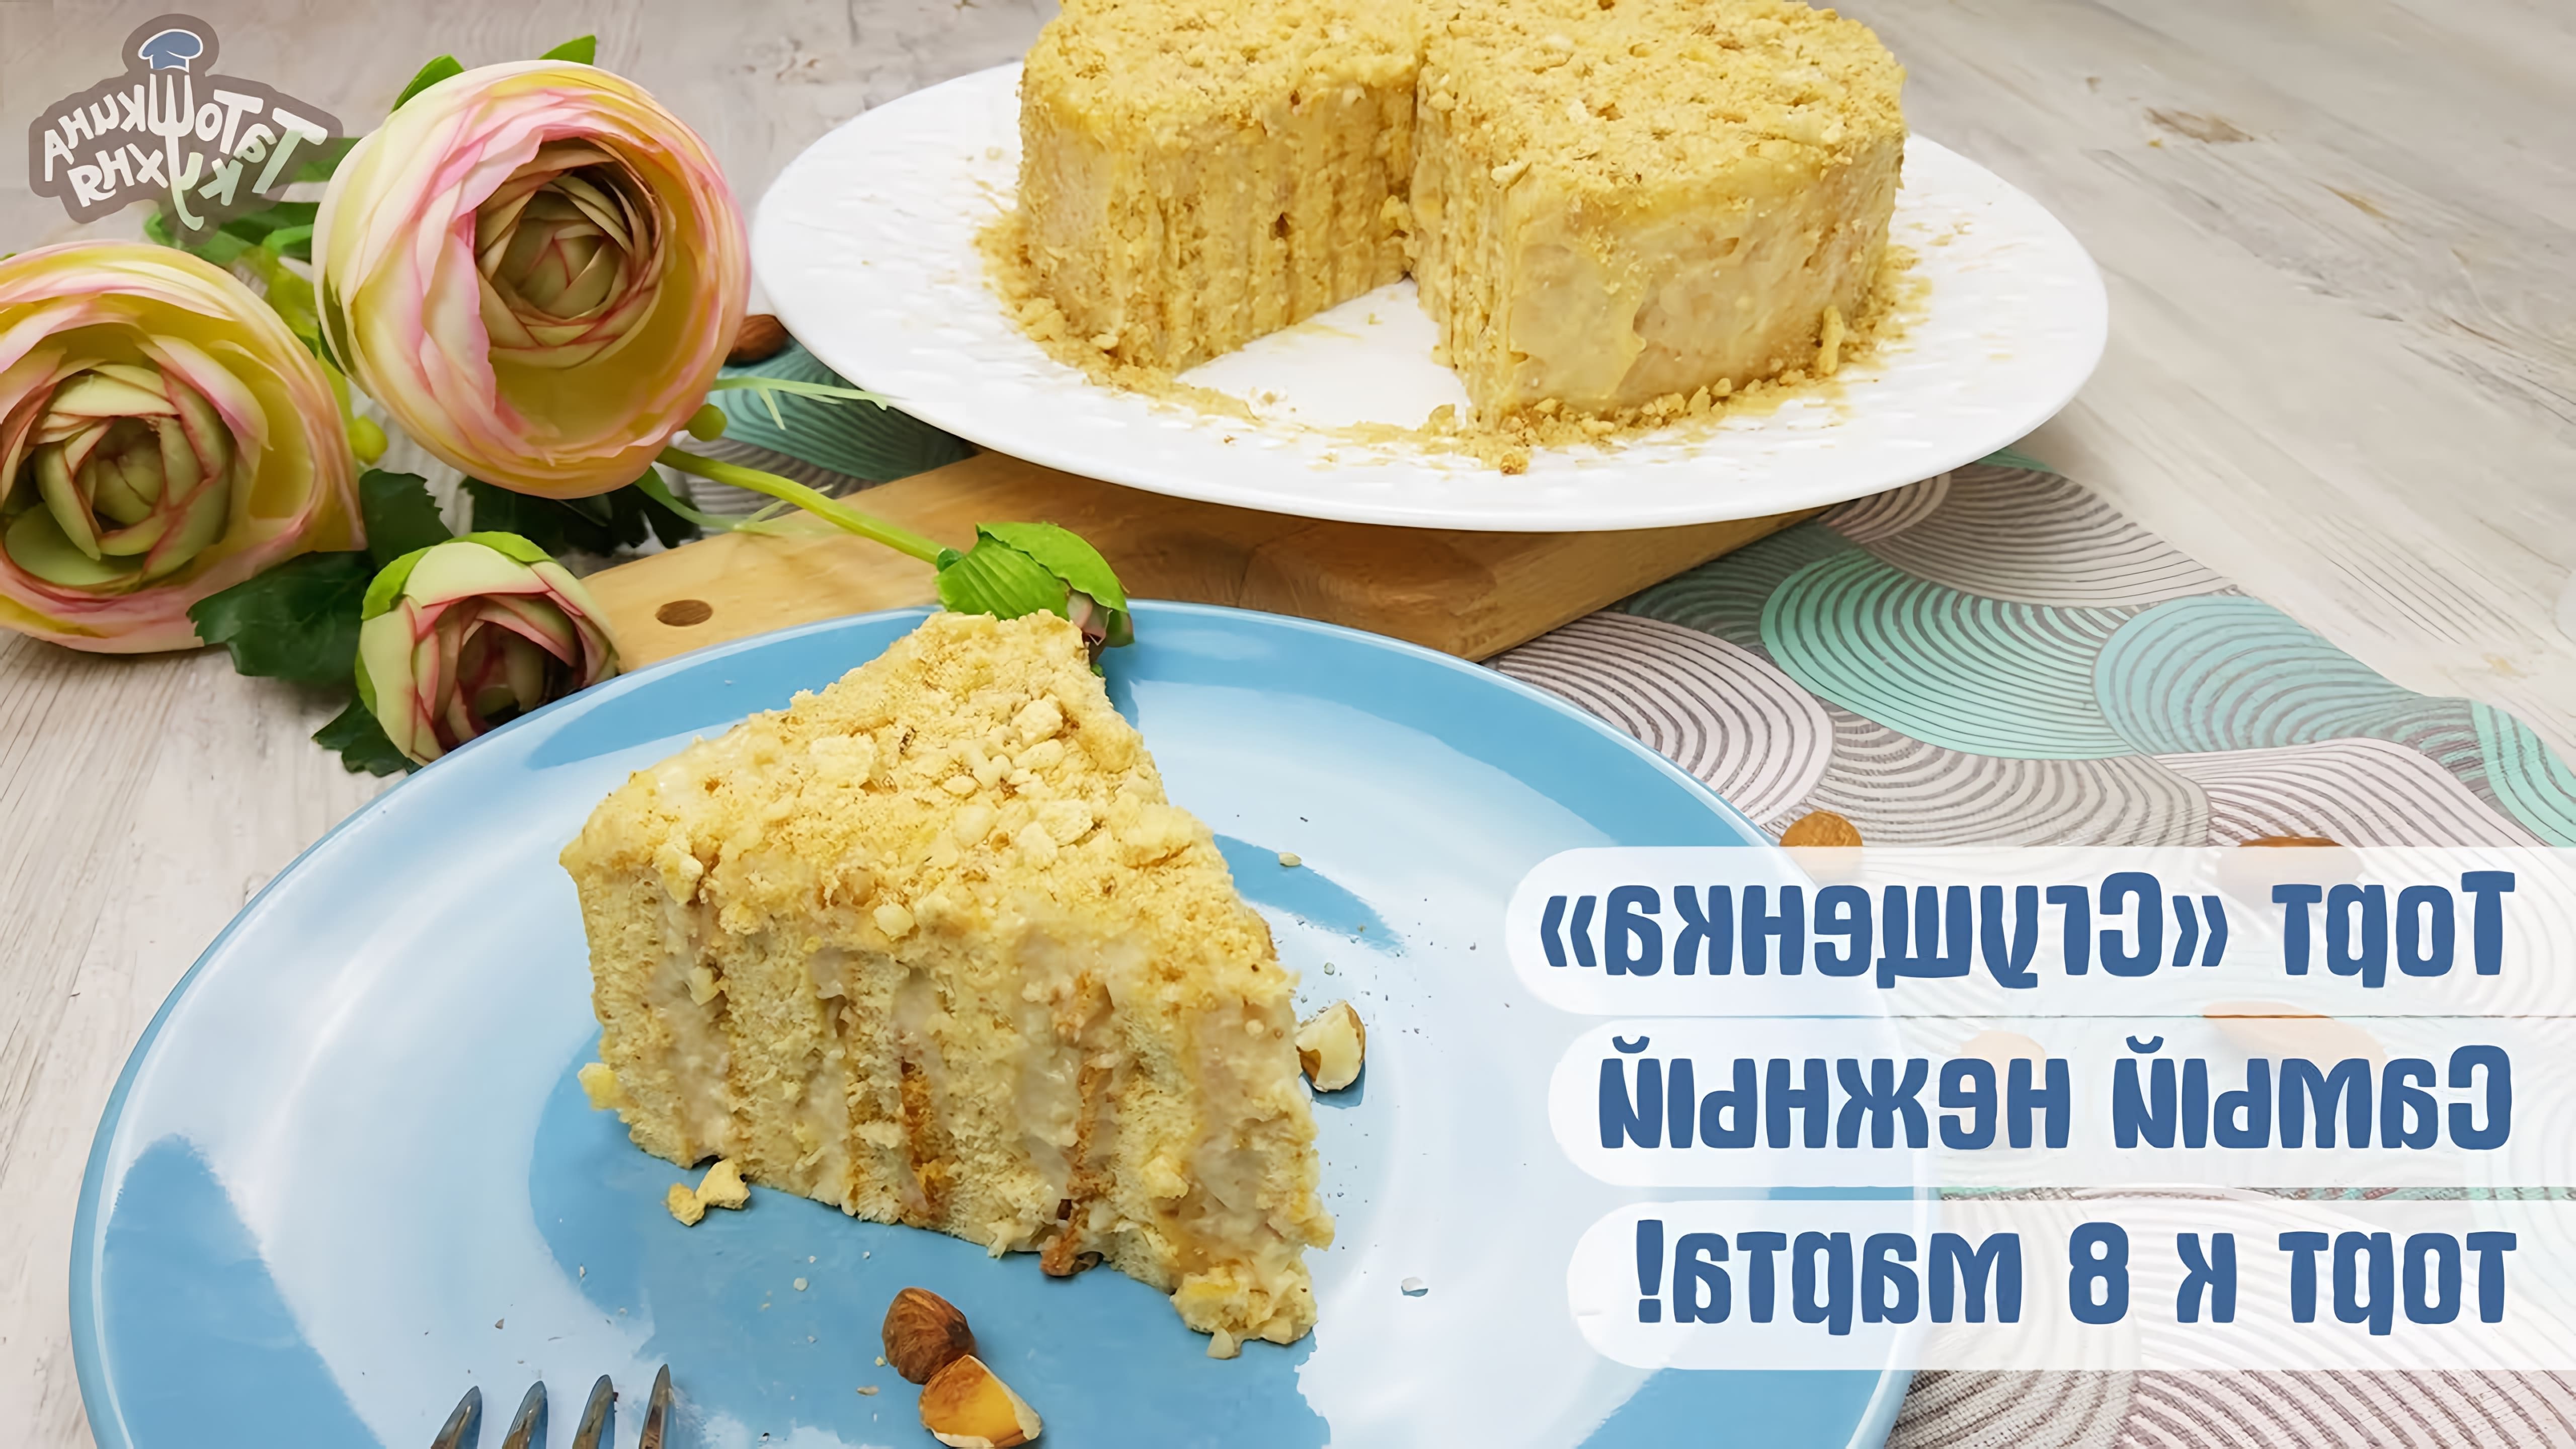 В этом видео демонстрируется рецепт приготовления торта "Сгущенка" по Дюкану